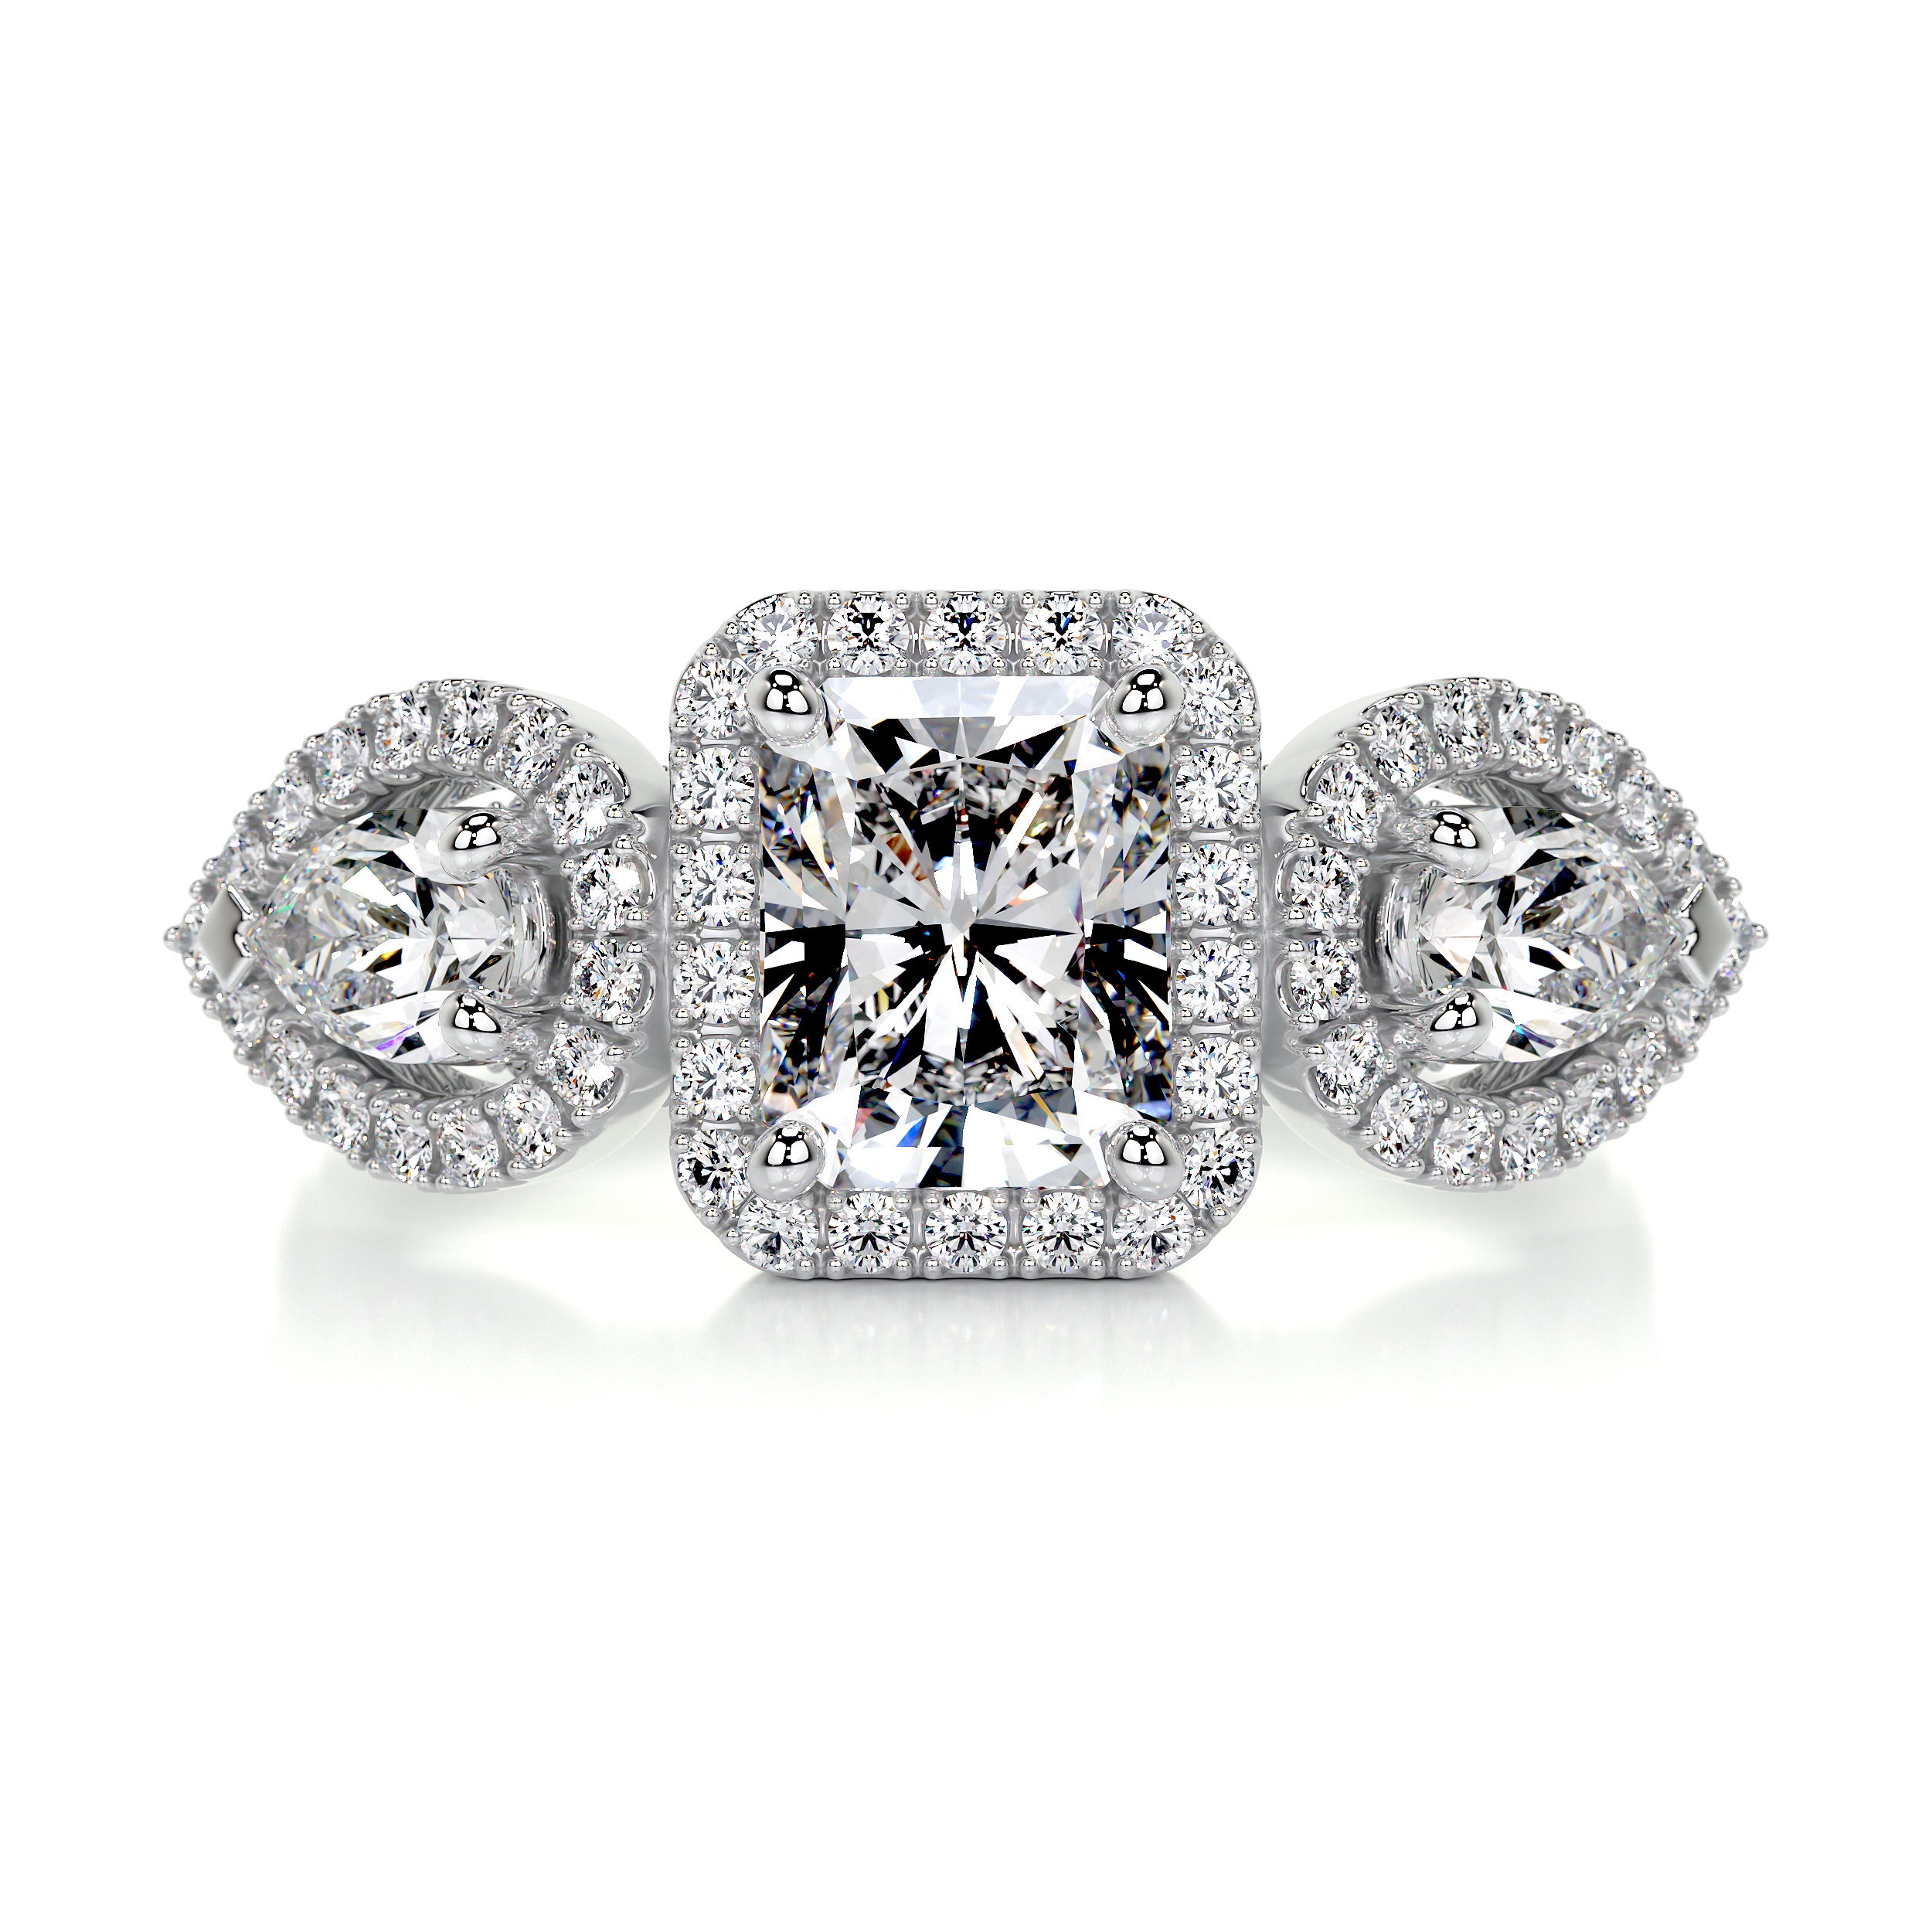 Violet Diamond Engagement Ring   (2.15 Carat) - Platinum